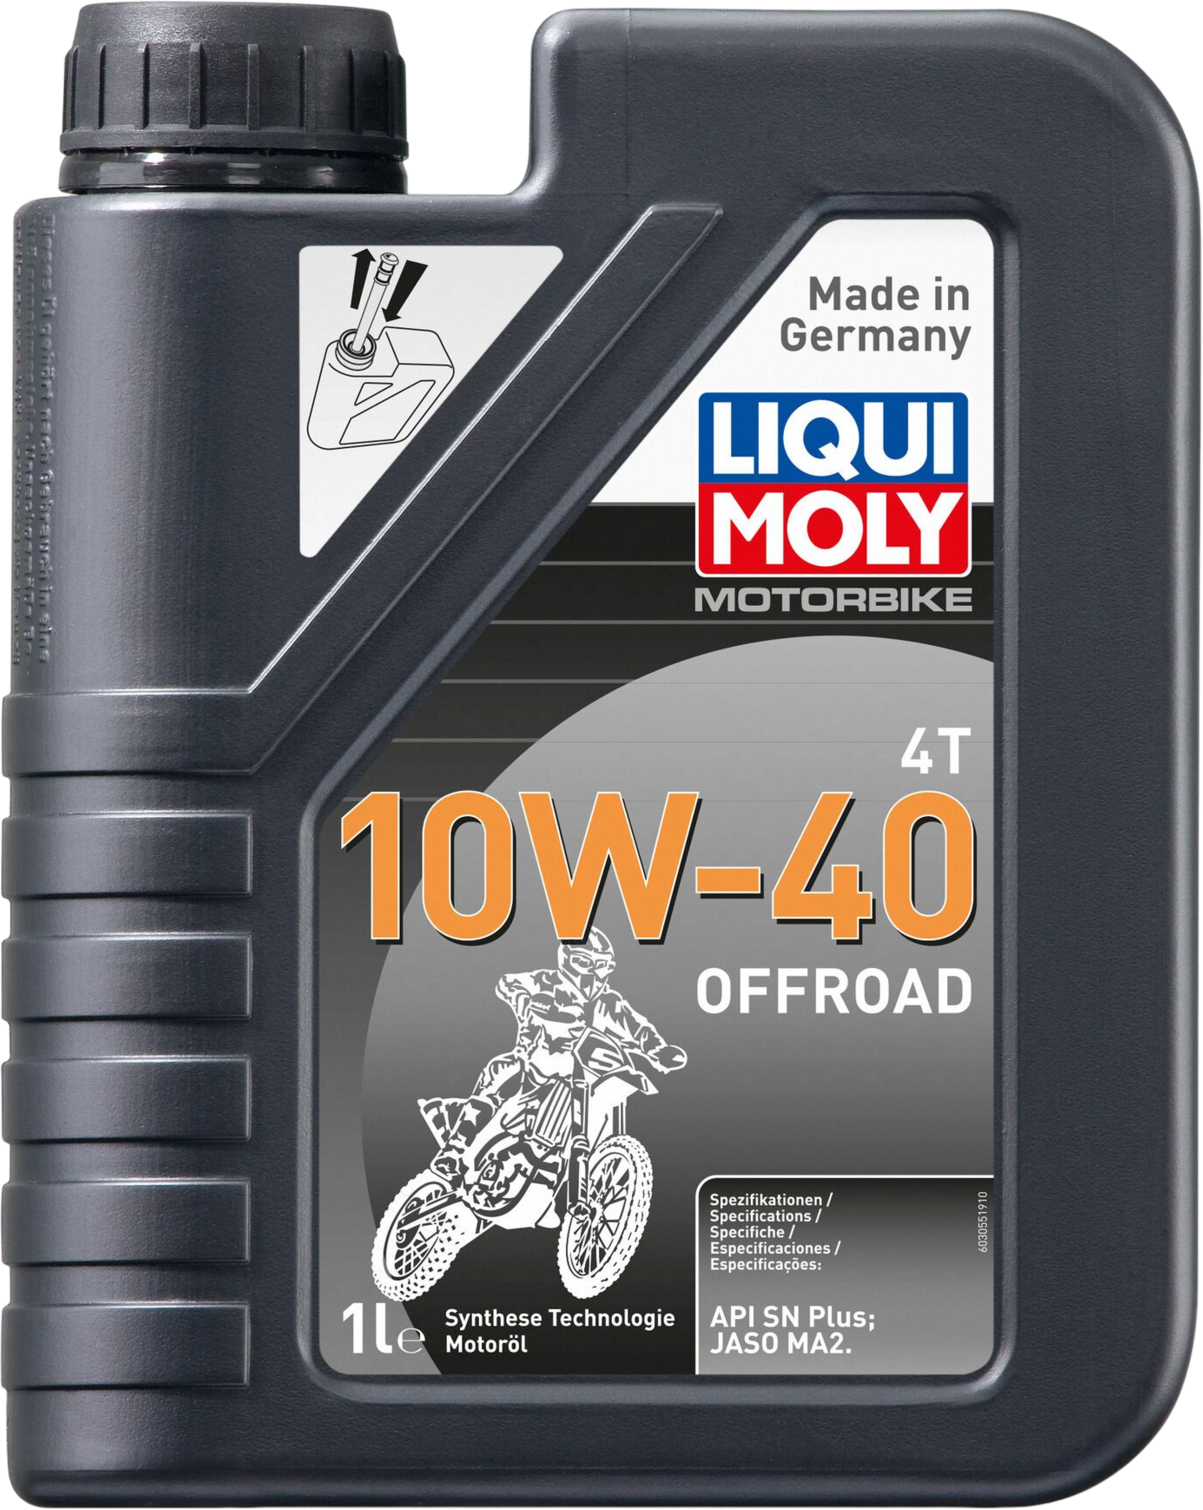 Liqui Moly Motorbike 4T 10W-40 Offroad, 1 lt